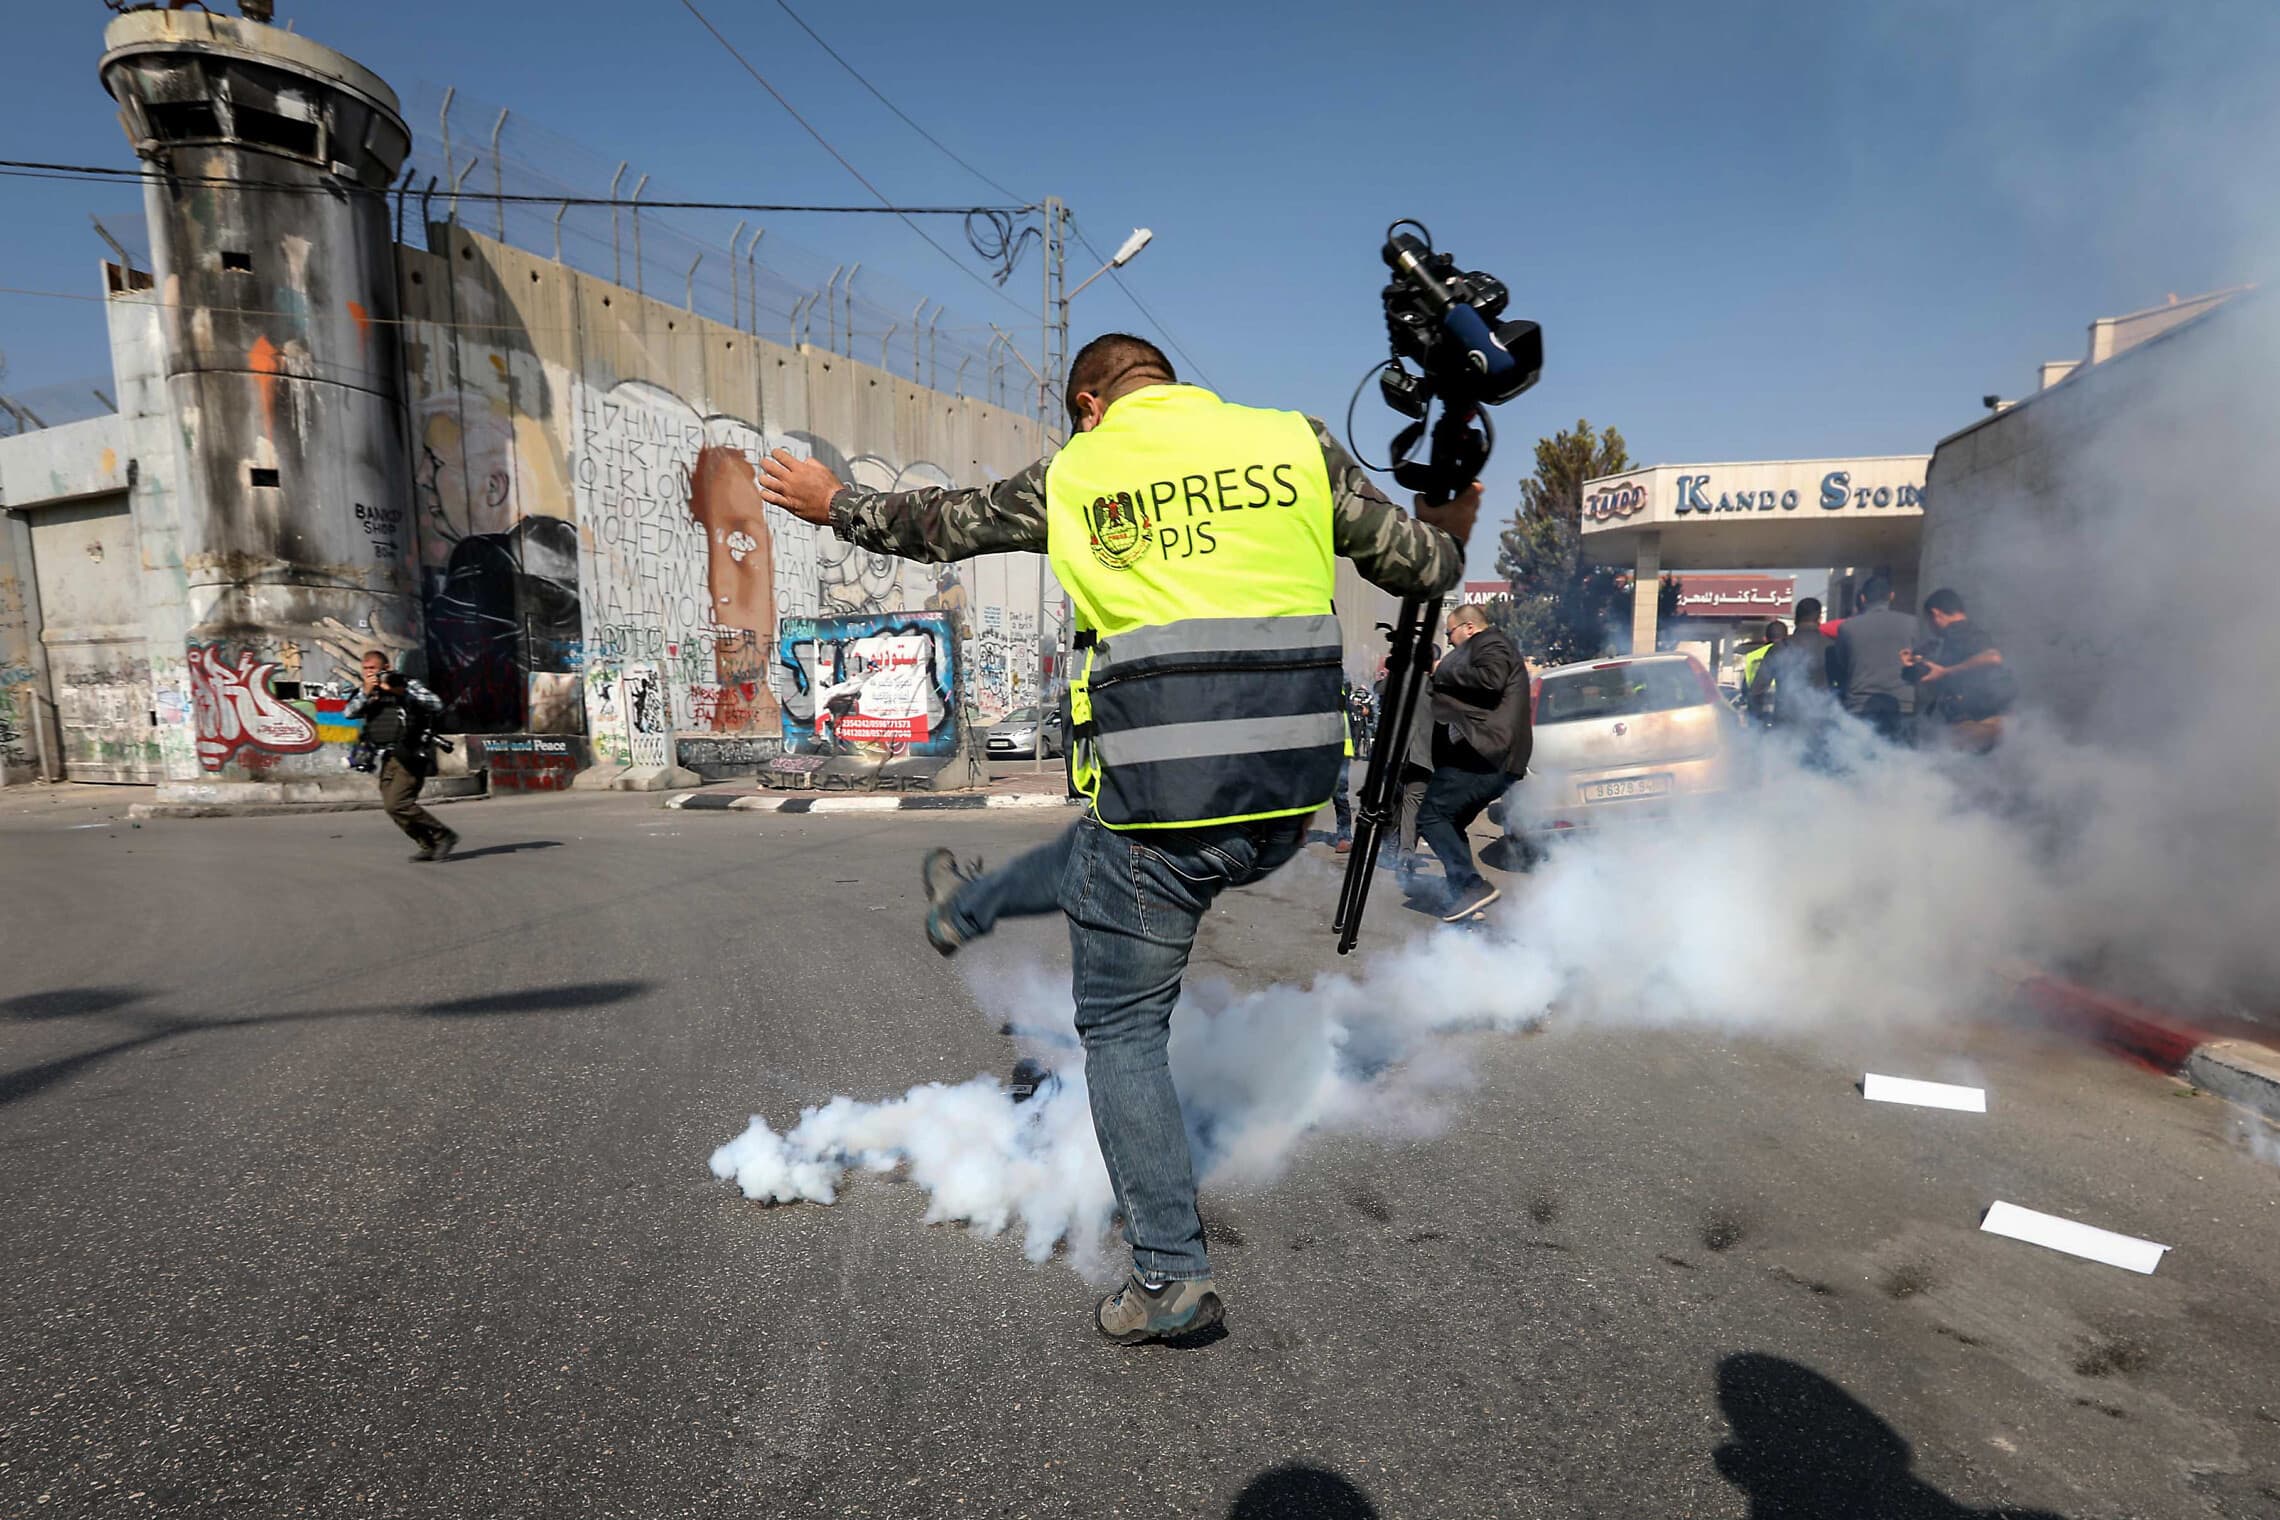 שוטר מג&#8221;ב יורה לעבר עיתונאי בבית לחם, 17 בנובמבר 2019 (צילום: Wisam Hashlamoun/Flash90)